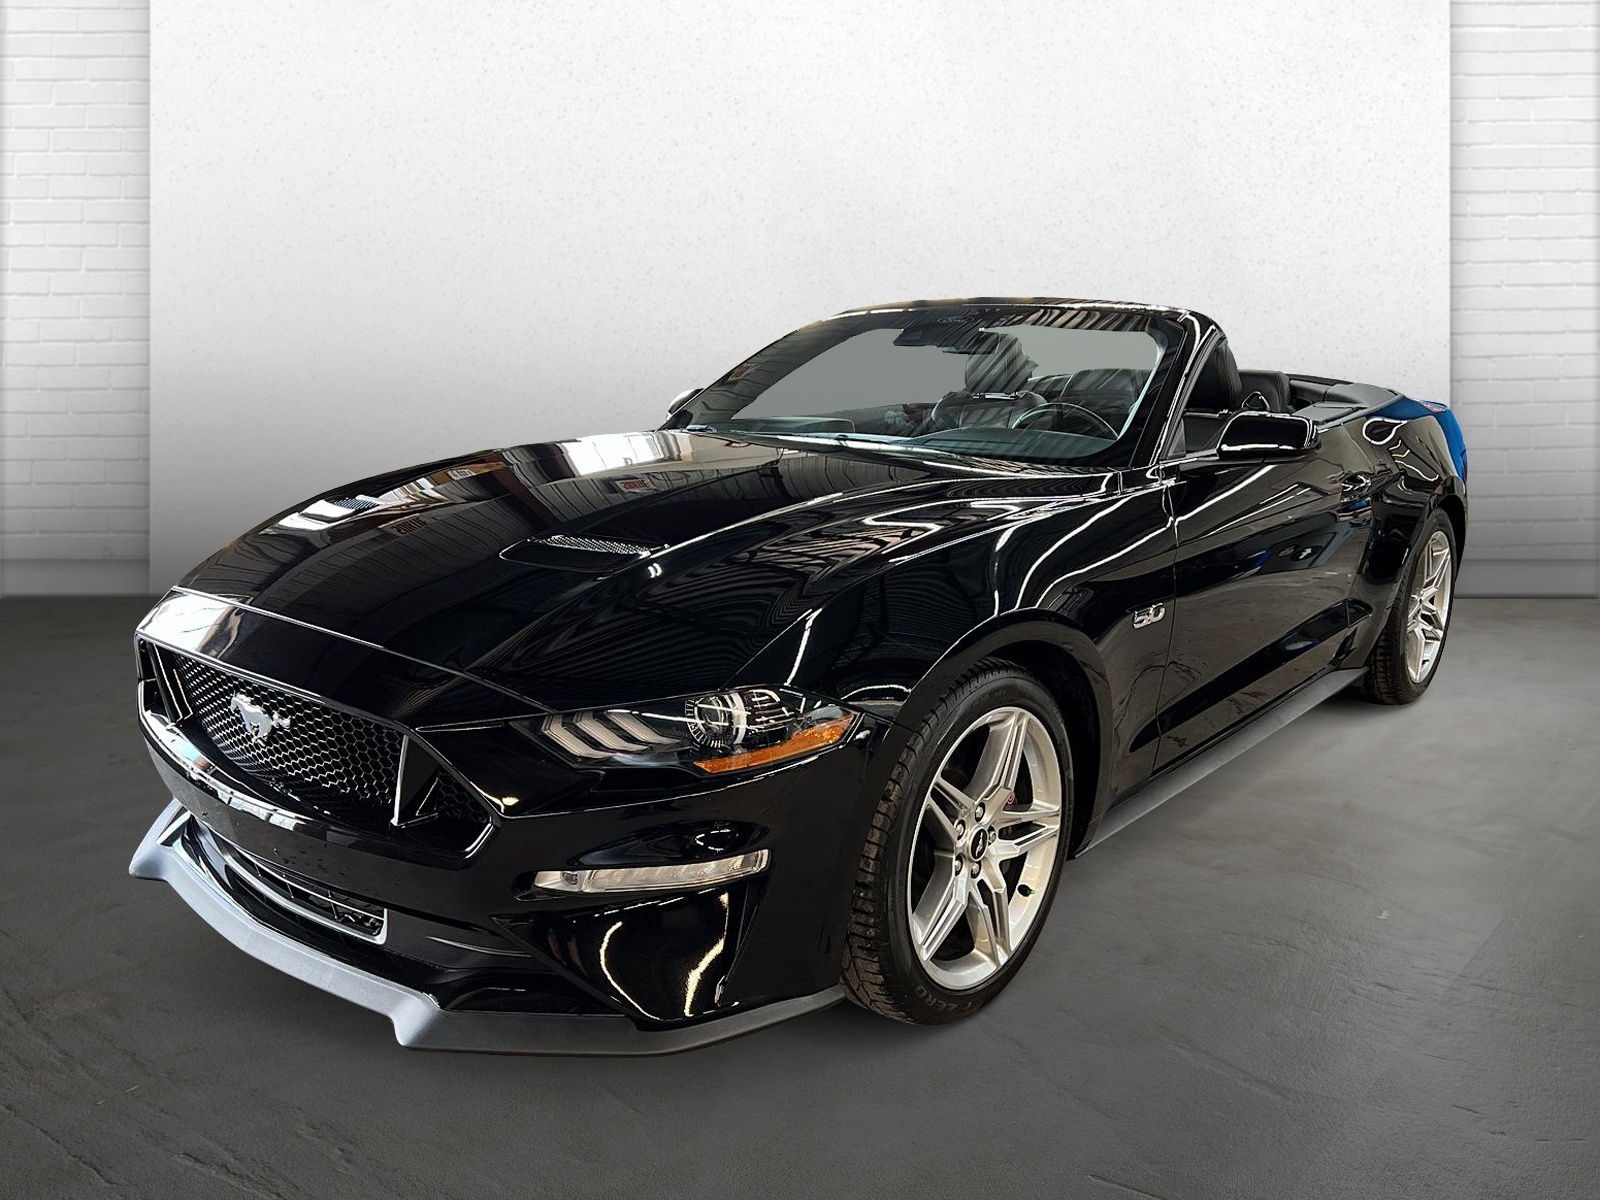 2021 Ford Mustang GT haut niveau décapotable